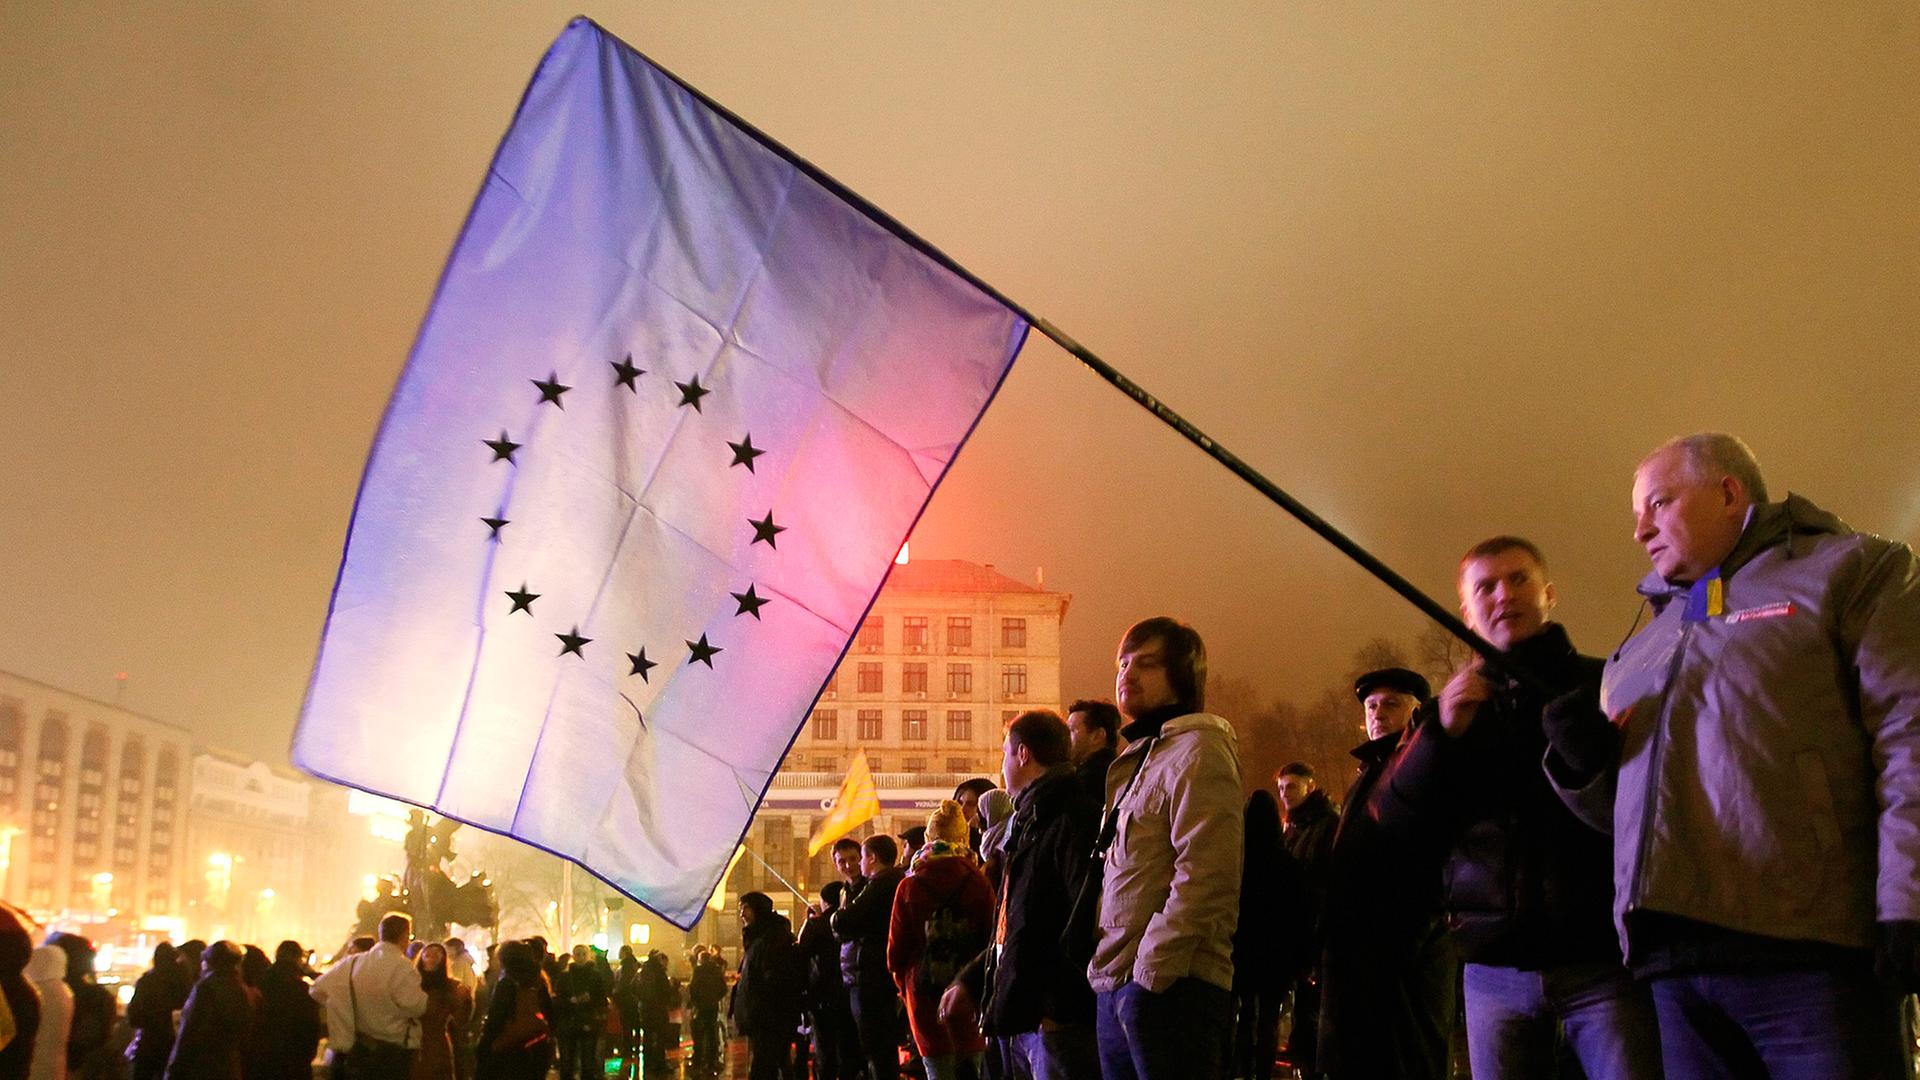 Ukrainer protestieren nach dem Stop der Verhandlungen zu einem Assoziierungsabkommen mit der EU gegen ihre Regierung.